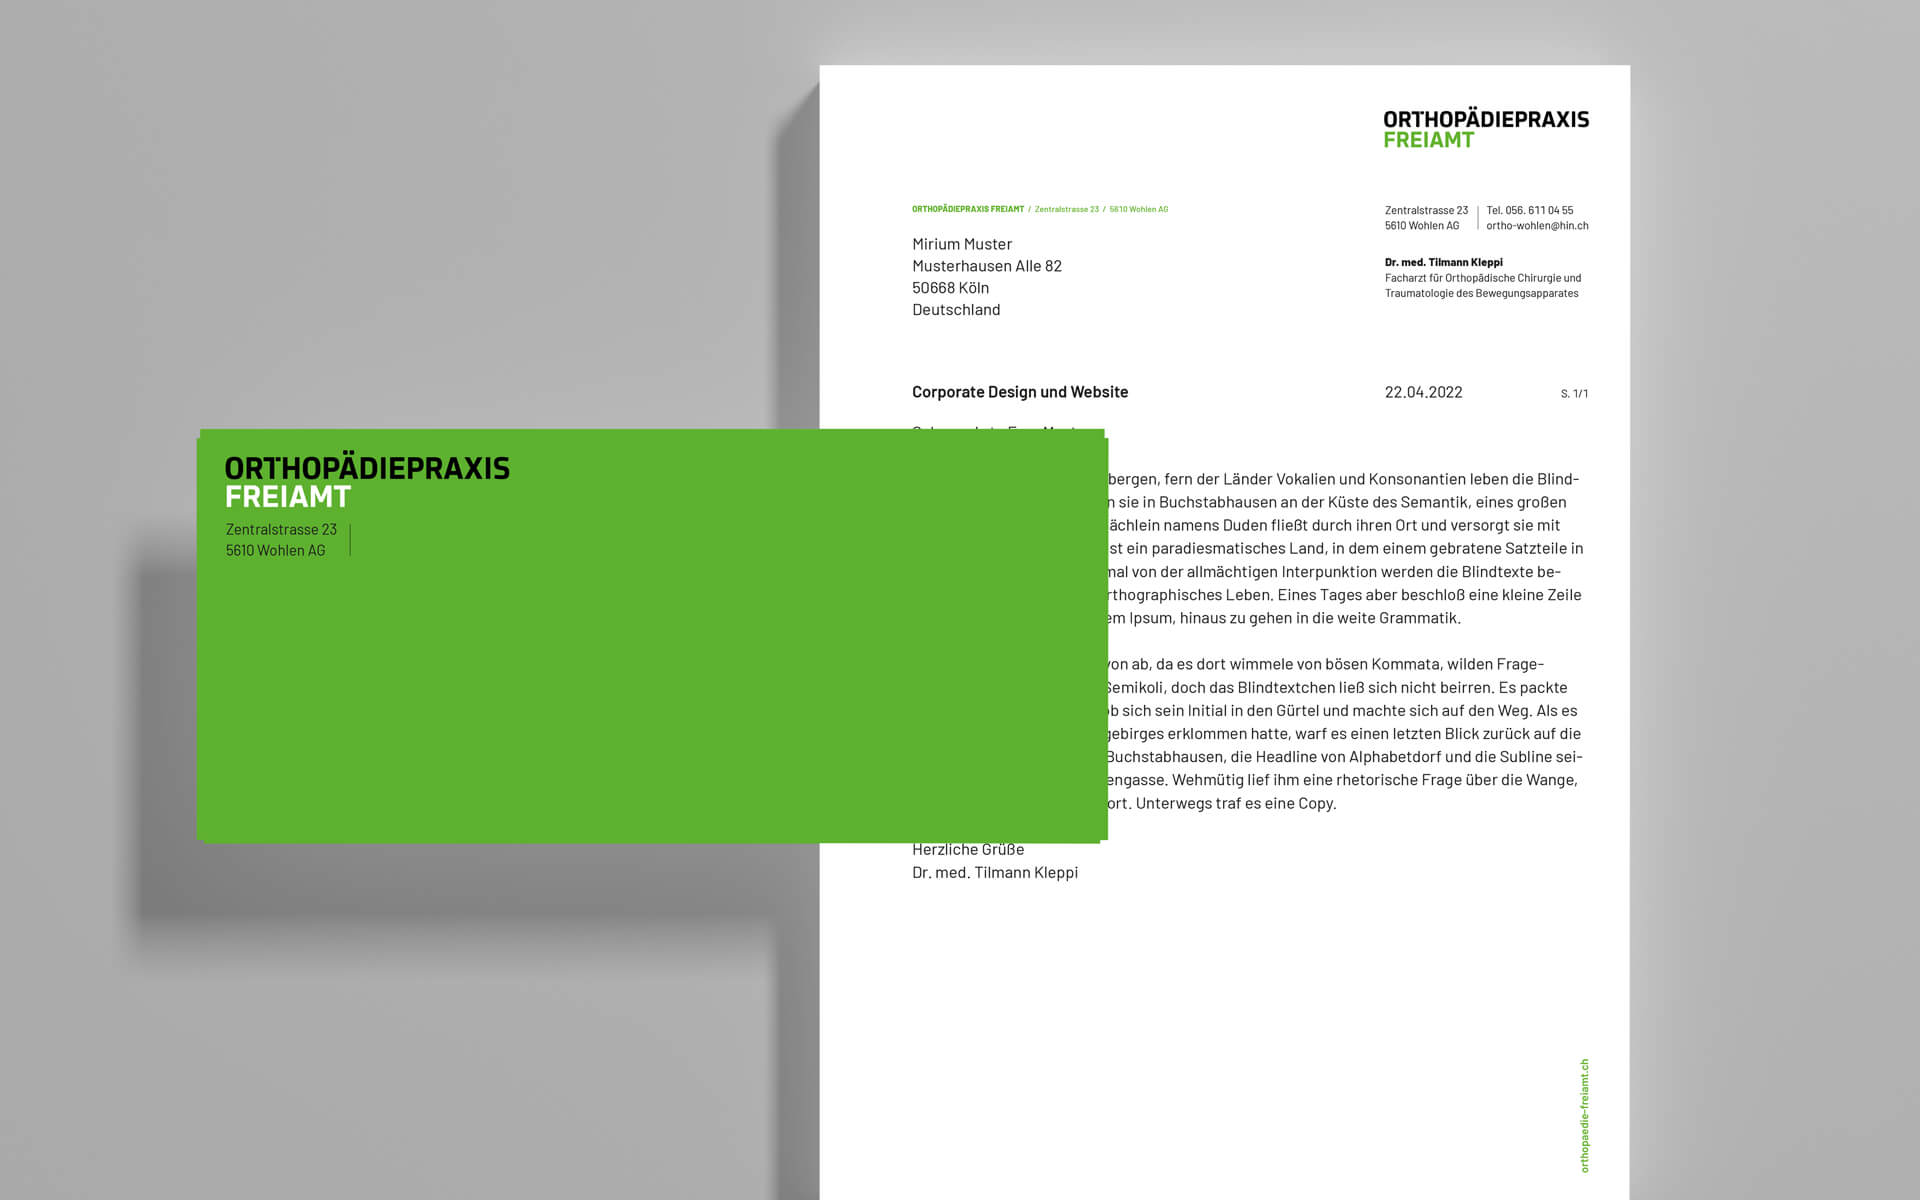 Corporate Design und Webdesign, Orthopädiepraxis Freiamt in der Schweiz, Gestaltung der Geschäftsausstattung, Briefbogen und Kuvert